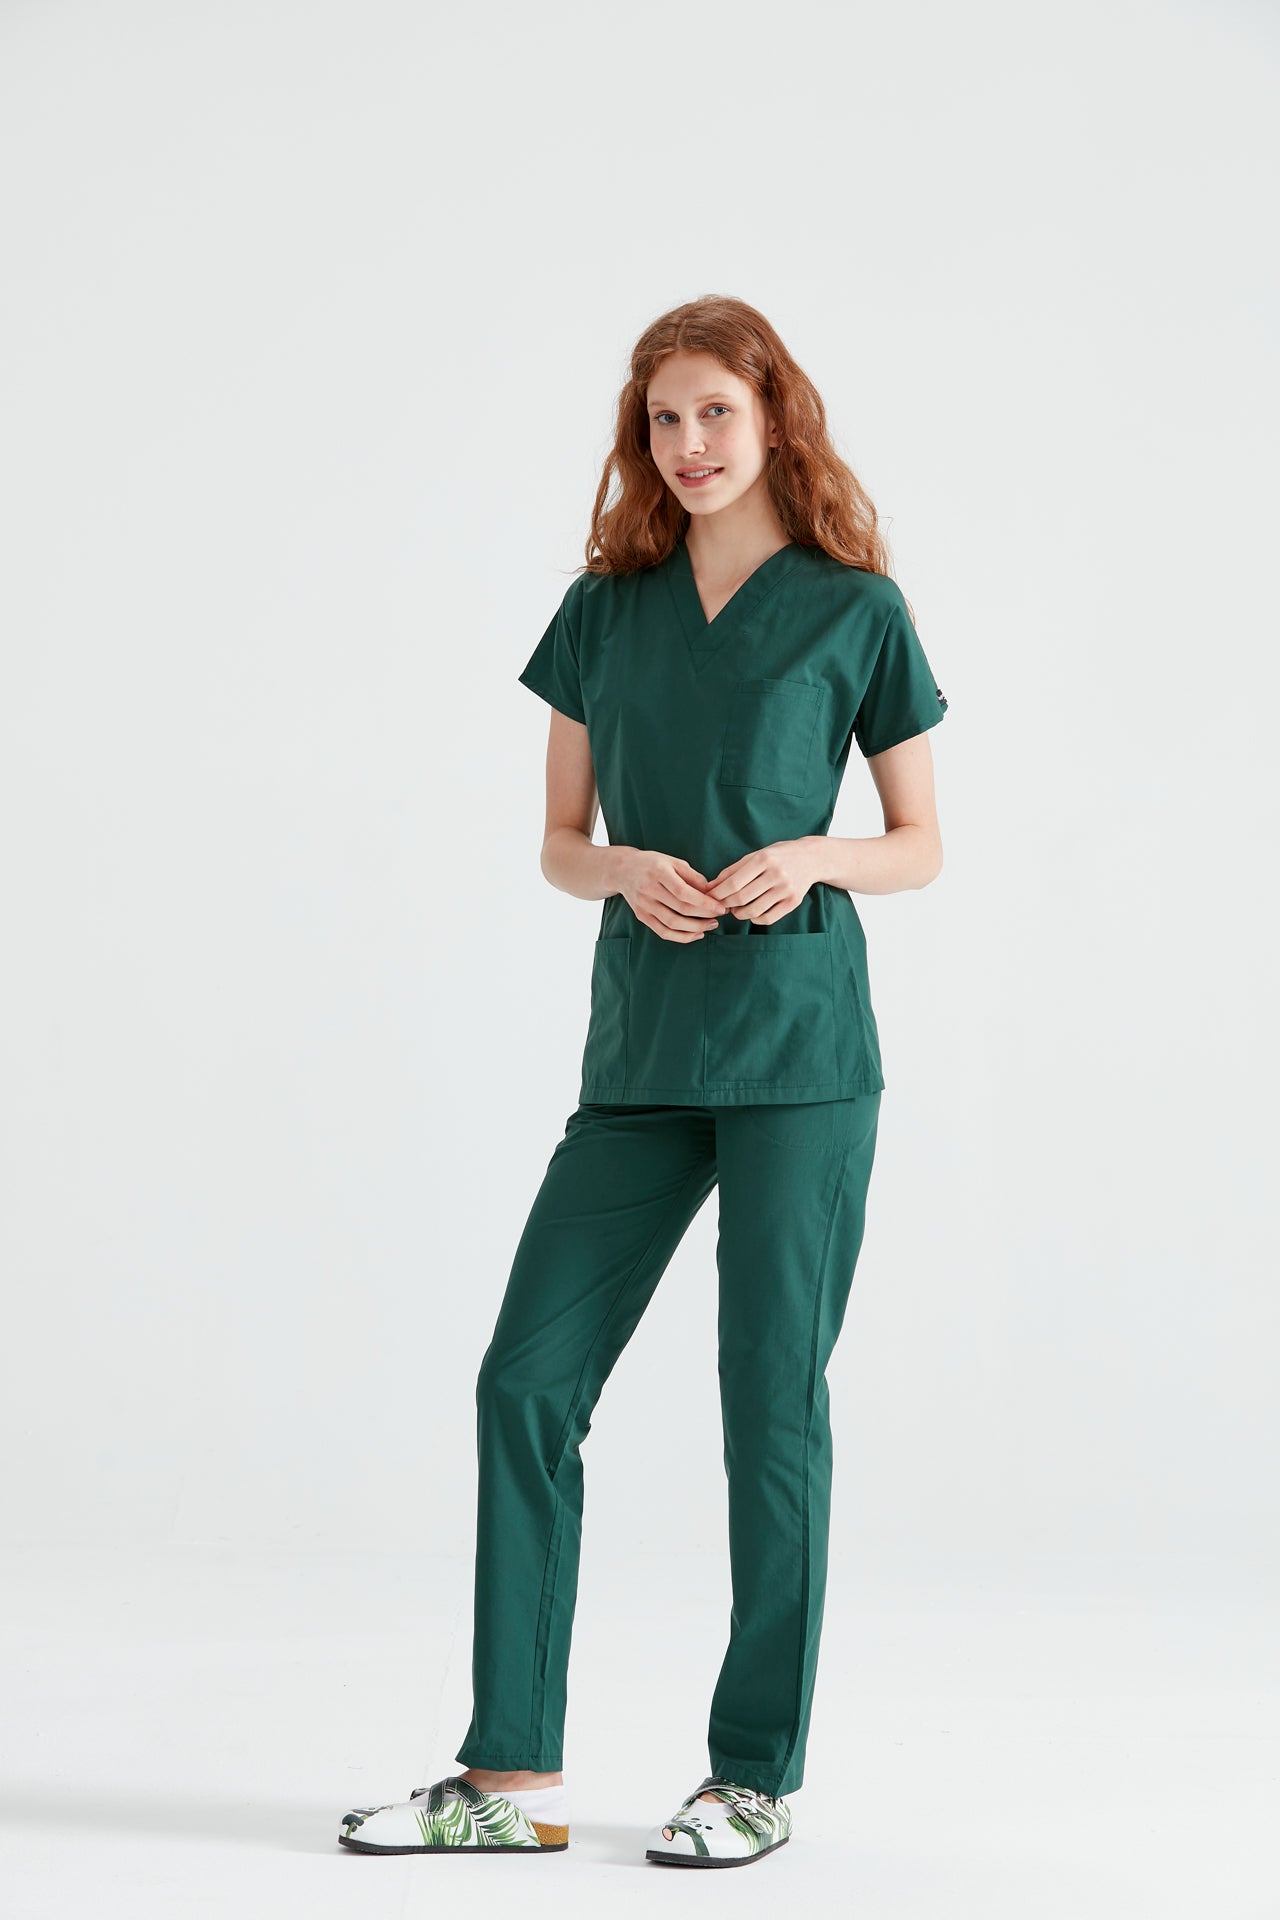  Asistenta medicala imbracata in costum din elastan verde kaki, vedere din profil